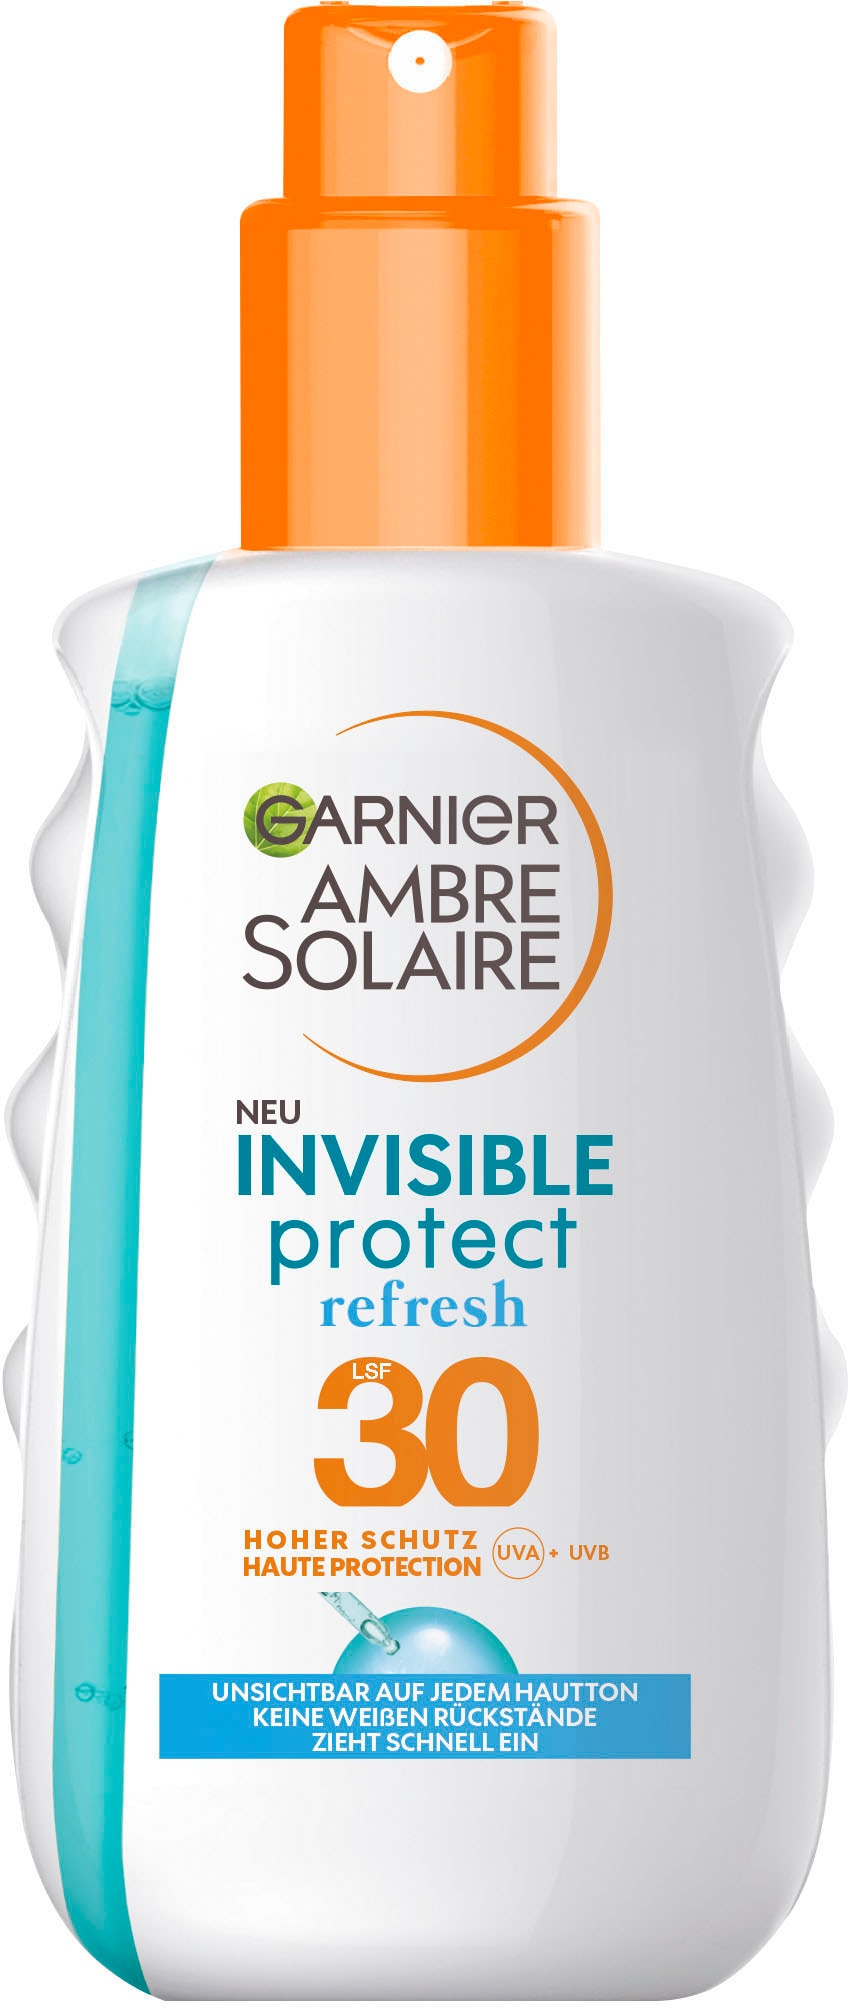 UNIVERSAL Refresh Protect GARNIER »Invisible online bei LSF30« Sonnenschutzspray